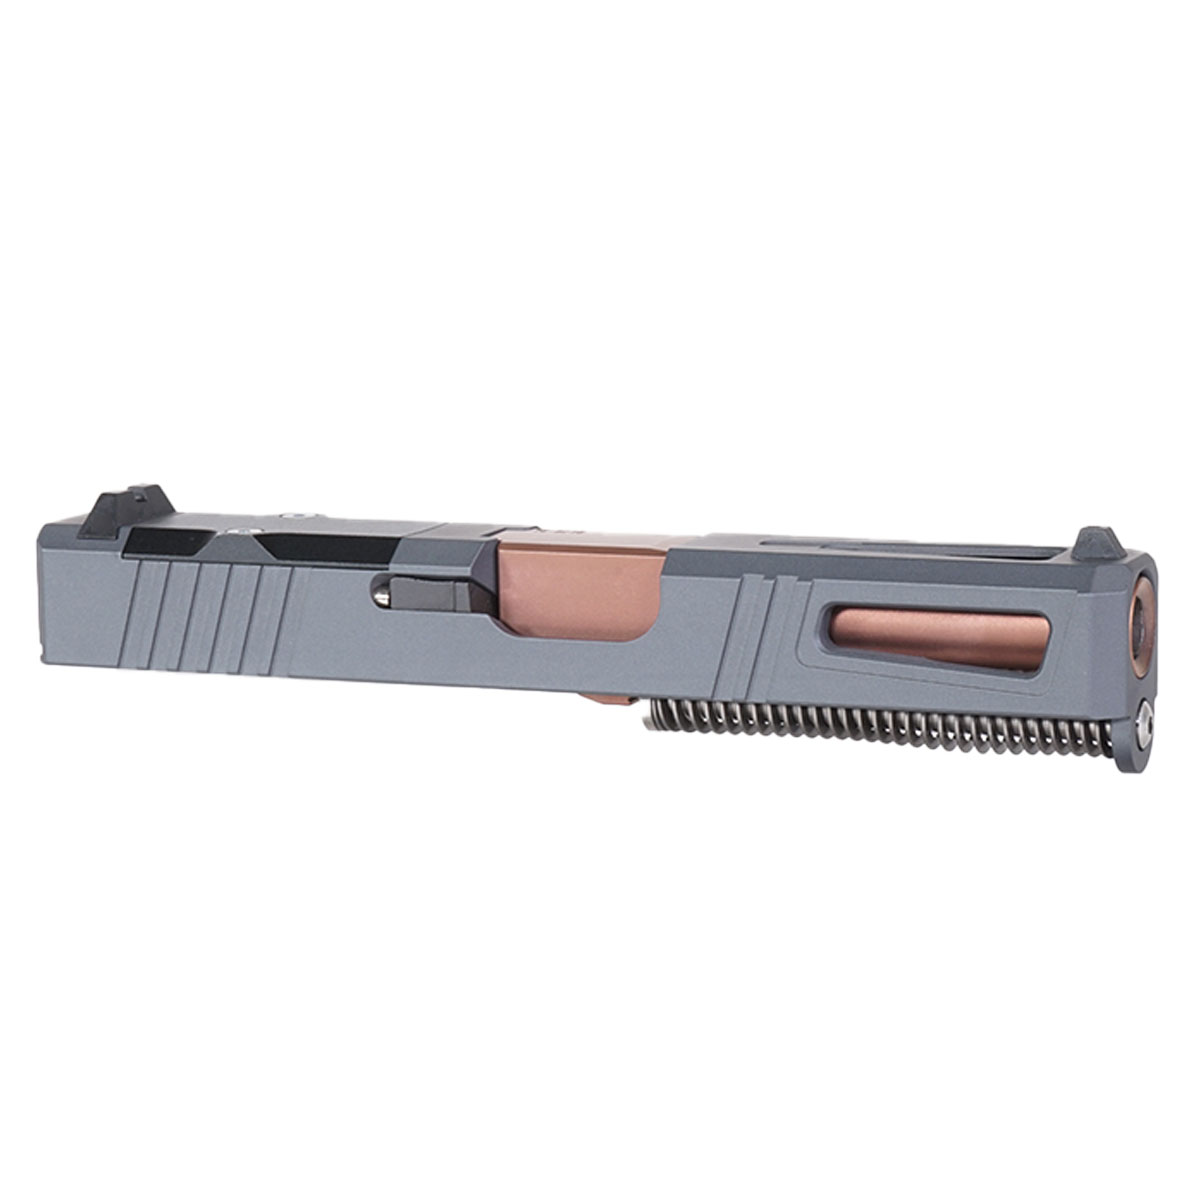 DDS 'Bronzesmith' 9mm Complete Slide Kit - Glock 19 Gen 1-3 Compatible